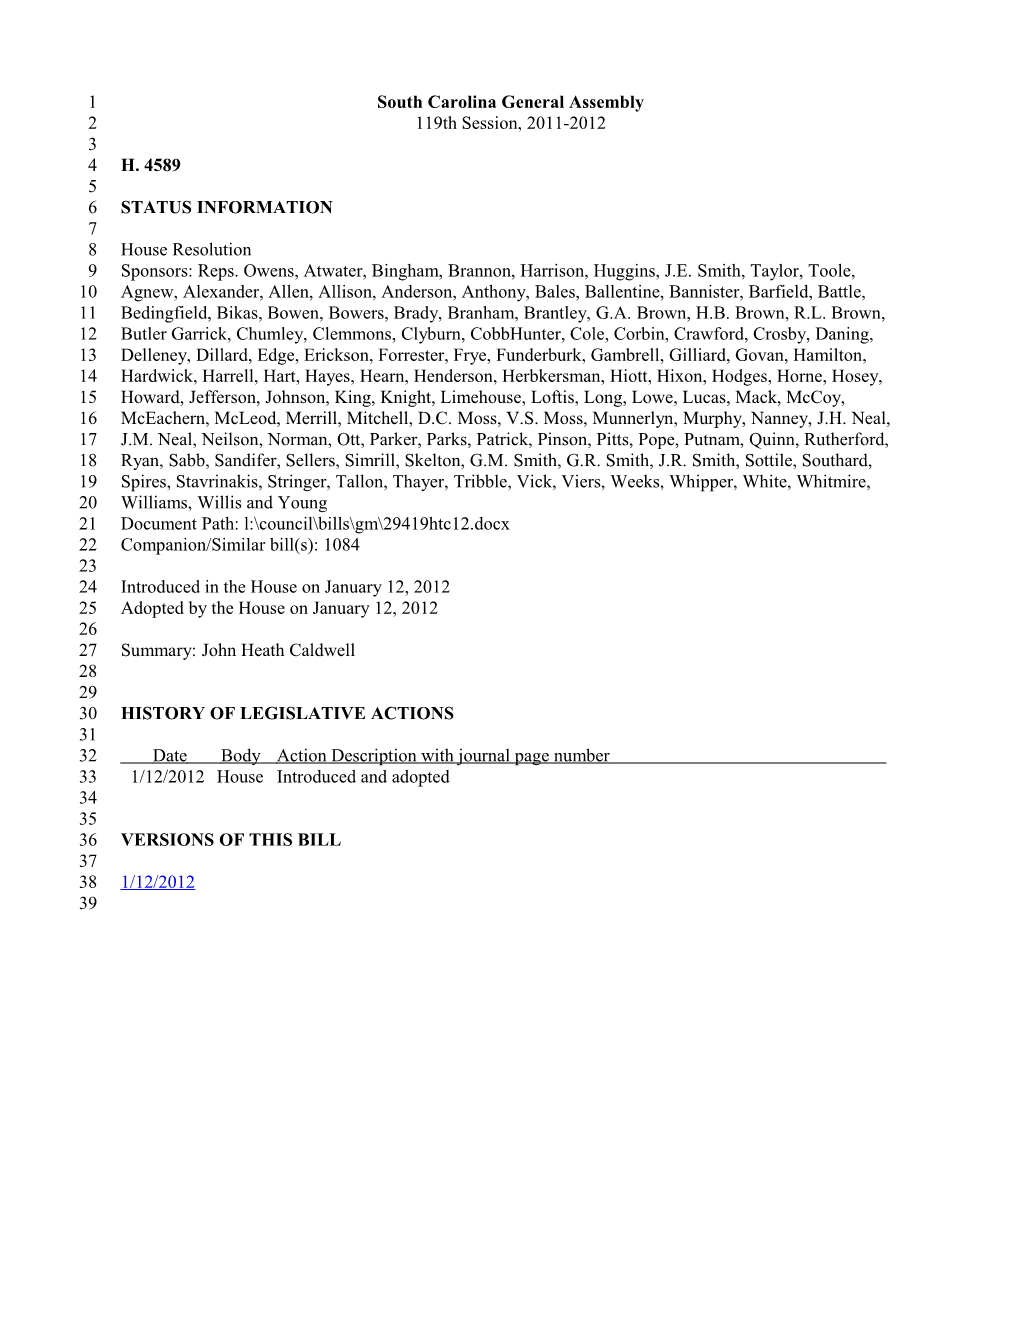 2011-2012 Bill 4589: John Heath Caldwell - South Carolina Legislature Online